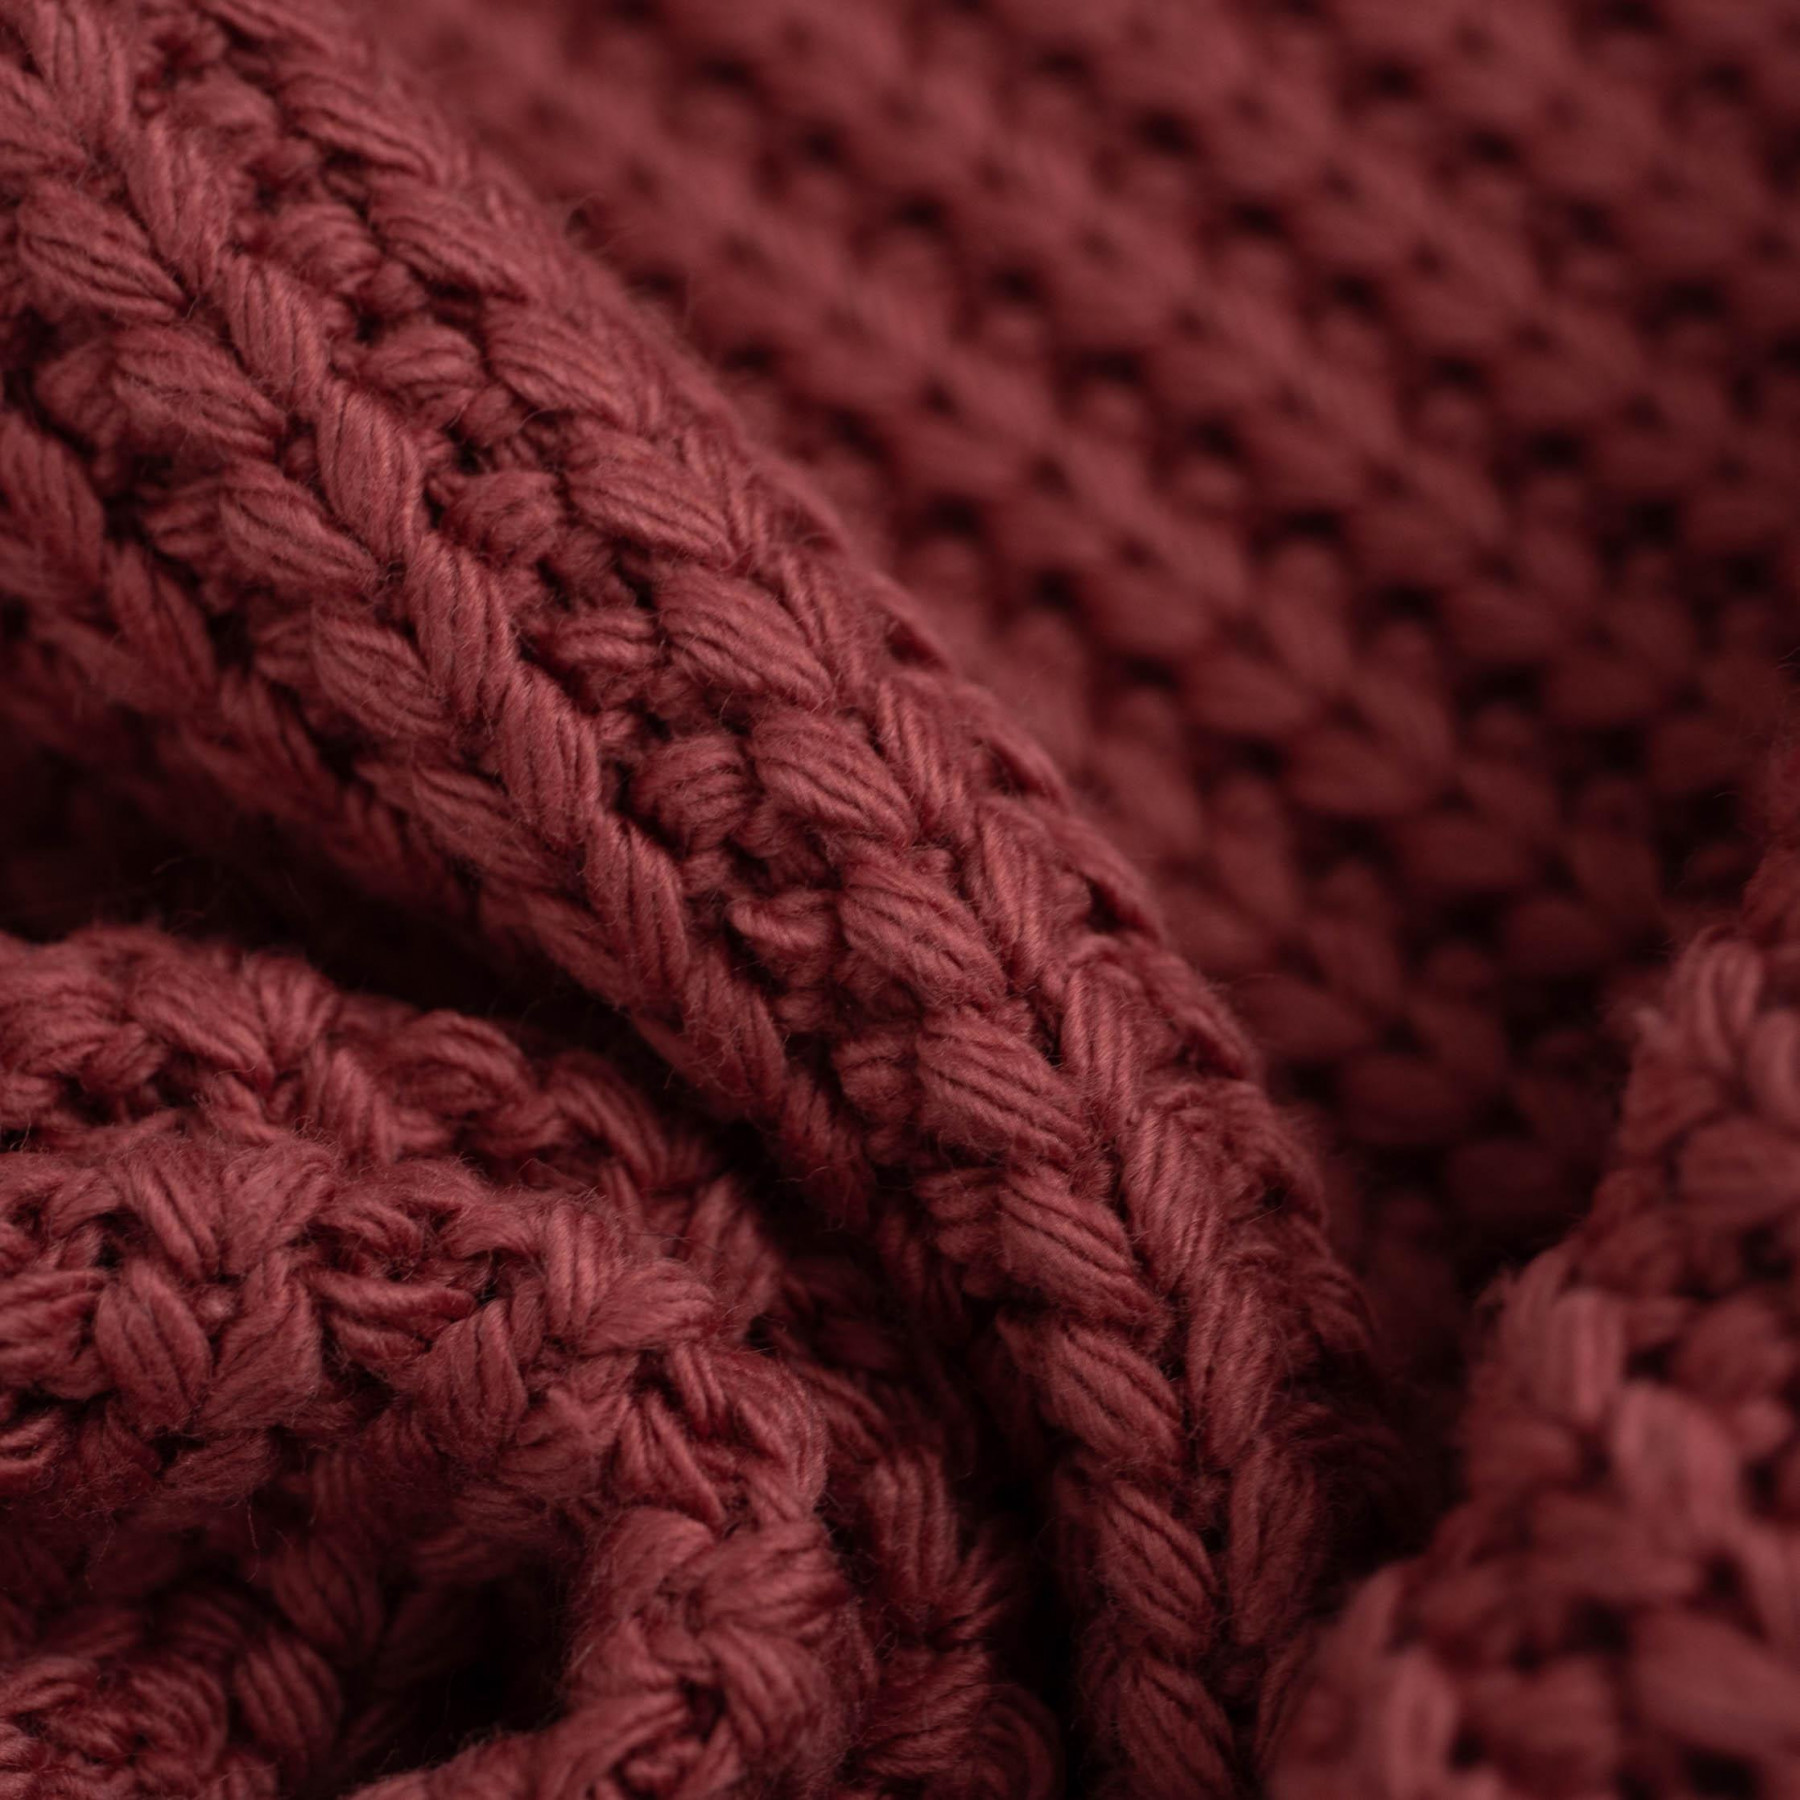 CEDAR - Cotton sweater knit fabric